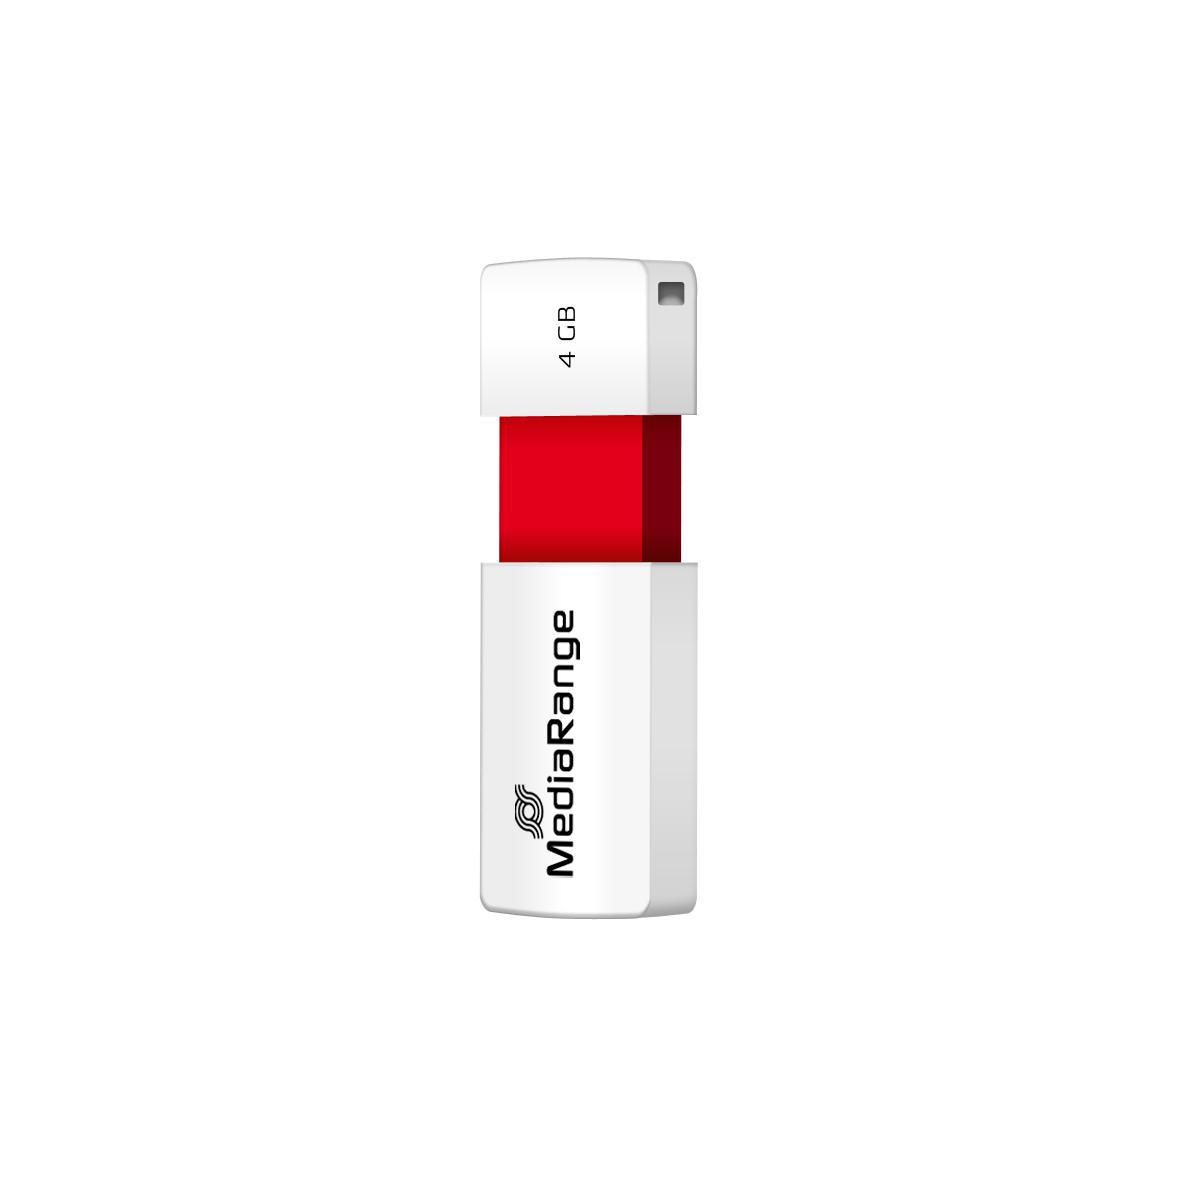 MEDIAR USB FLASH DRIVE 4GB RED